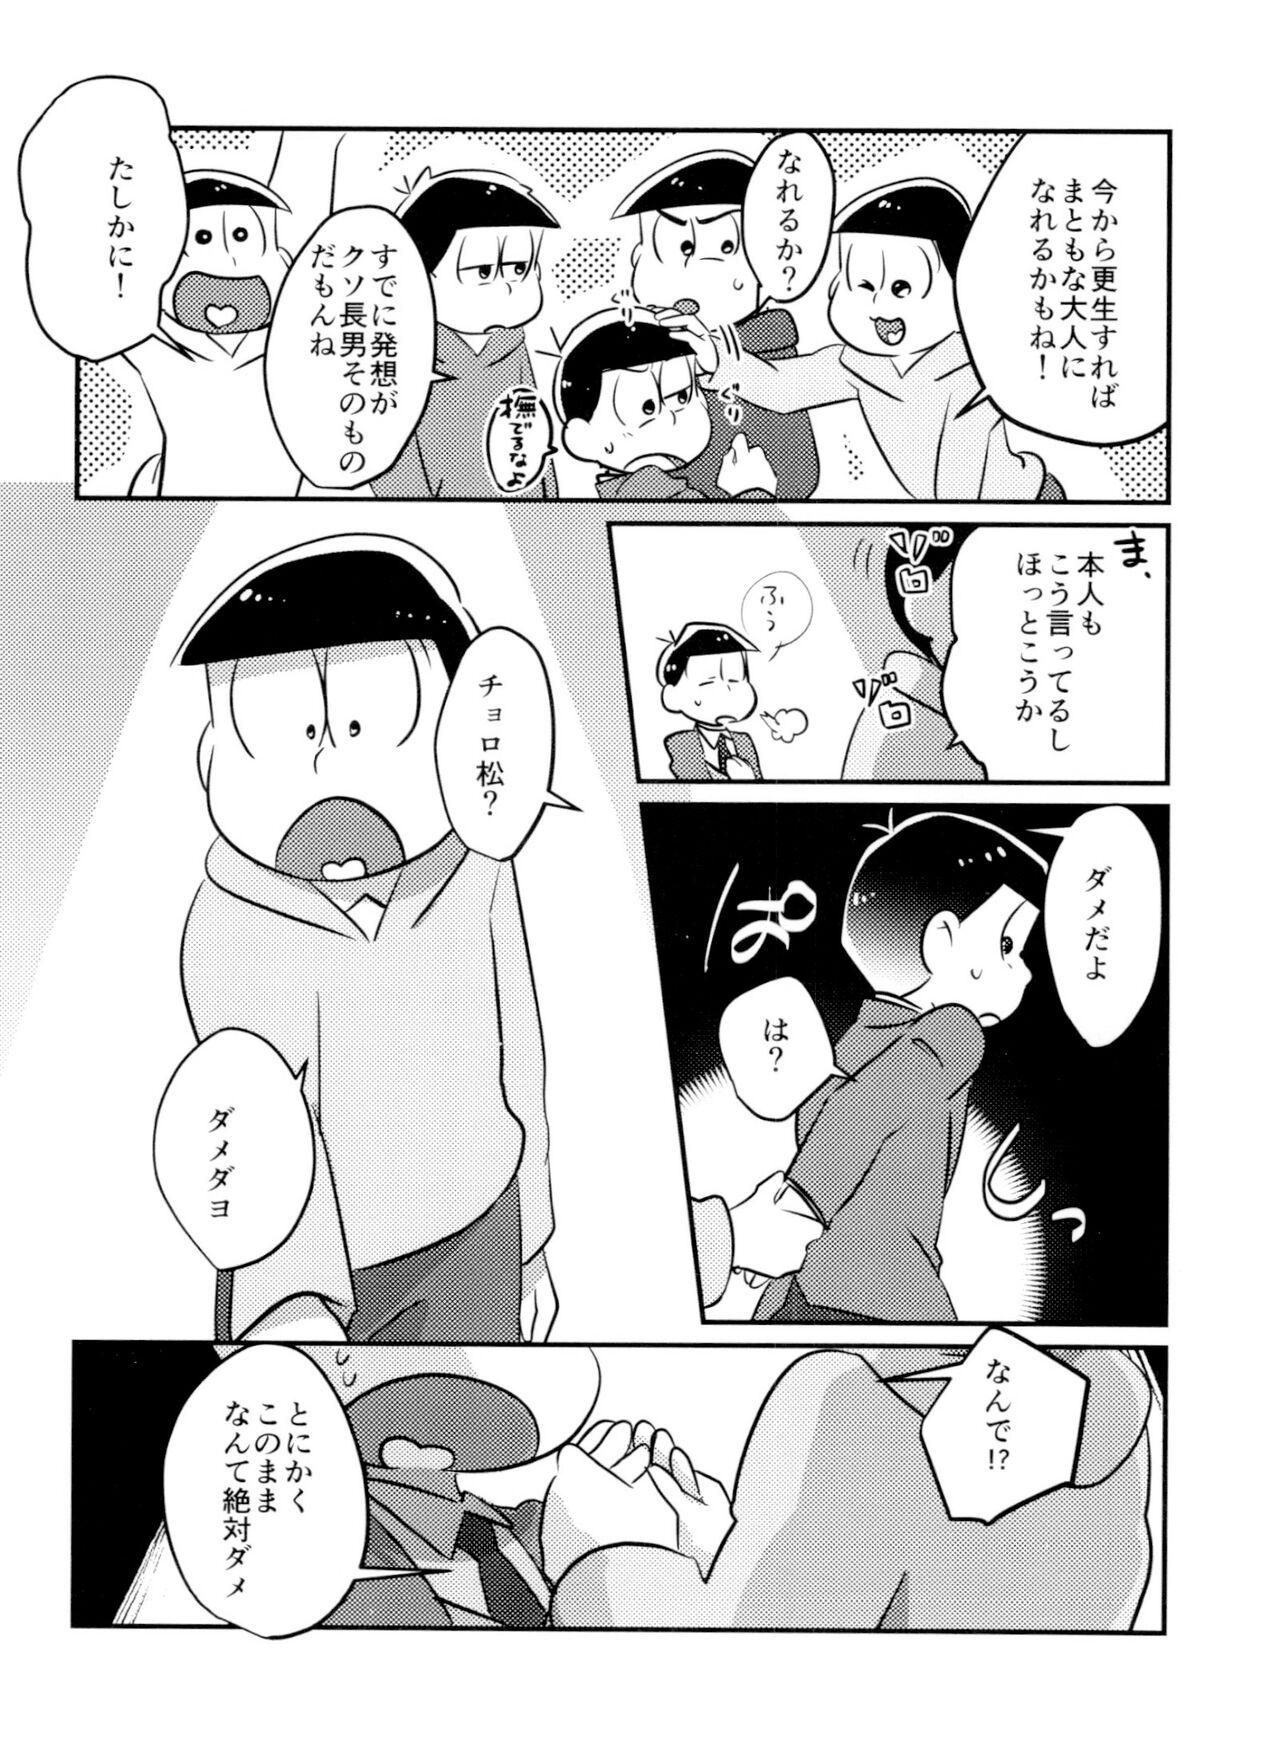 Vergon Kimi wa itsu kara otonana no!? - Osomatsu-san Cousin - Page 4